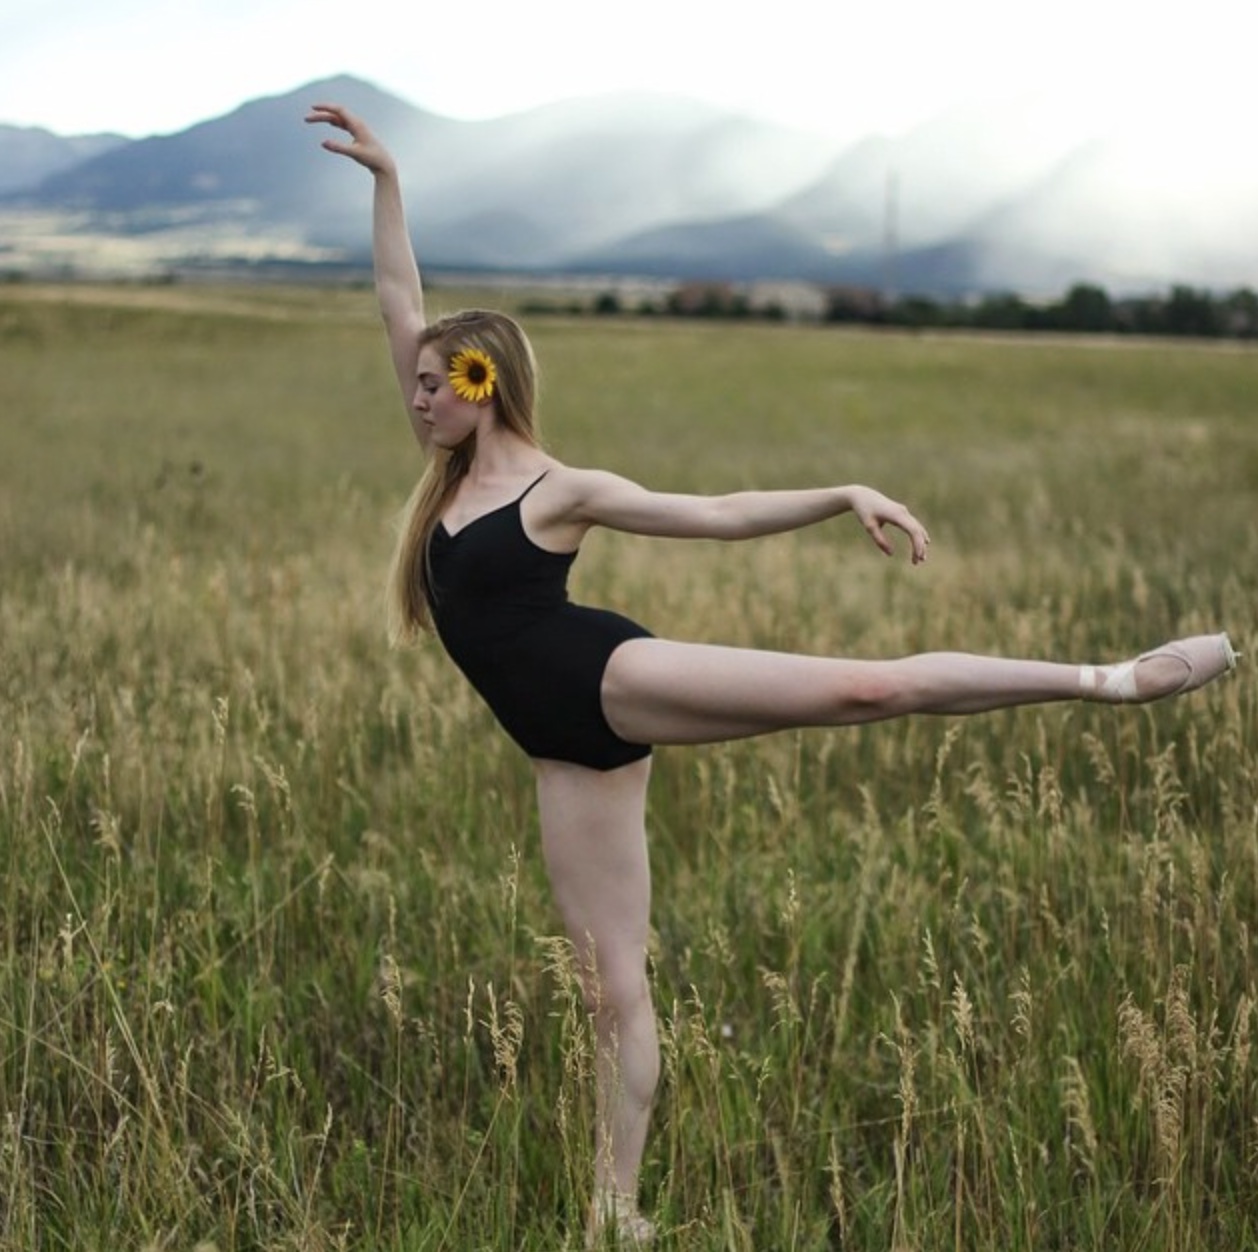 Meet the amazing teen ballerina | HelloGiggles